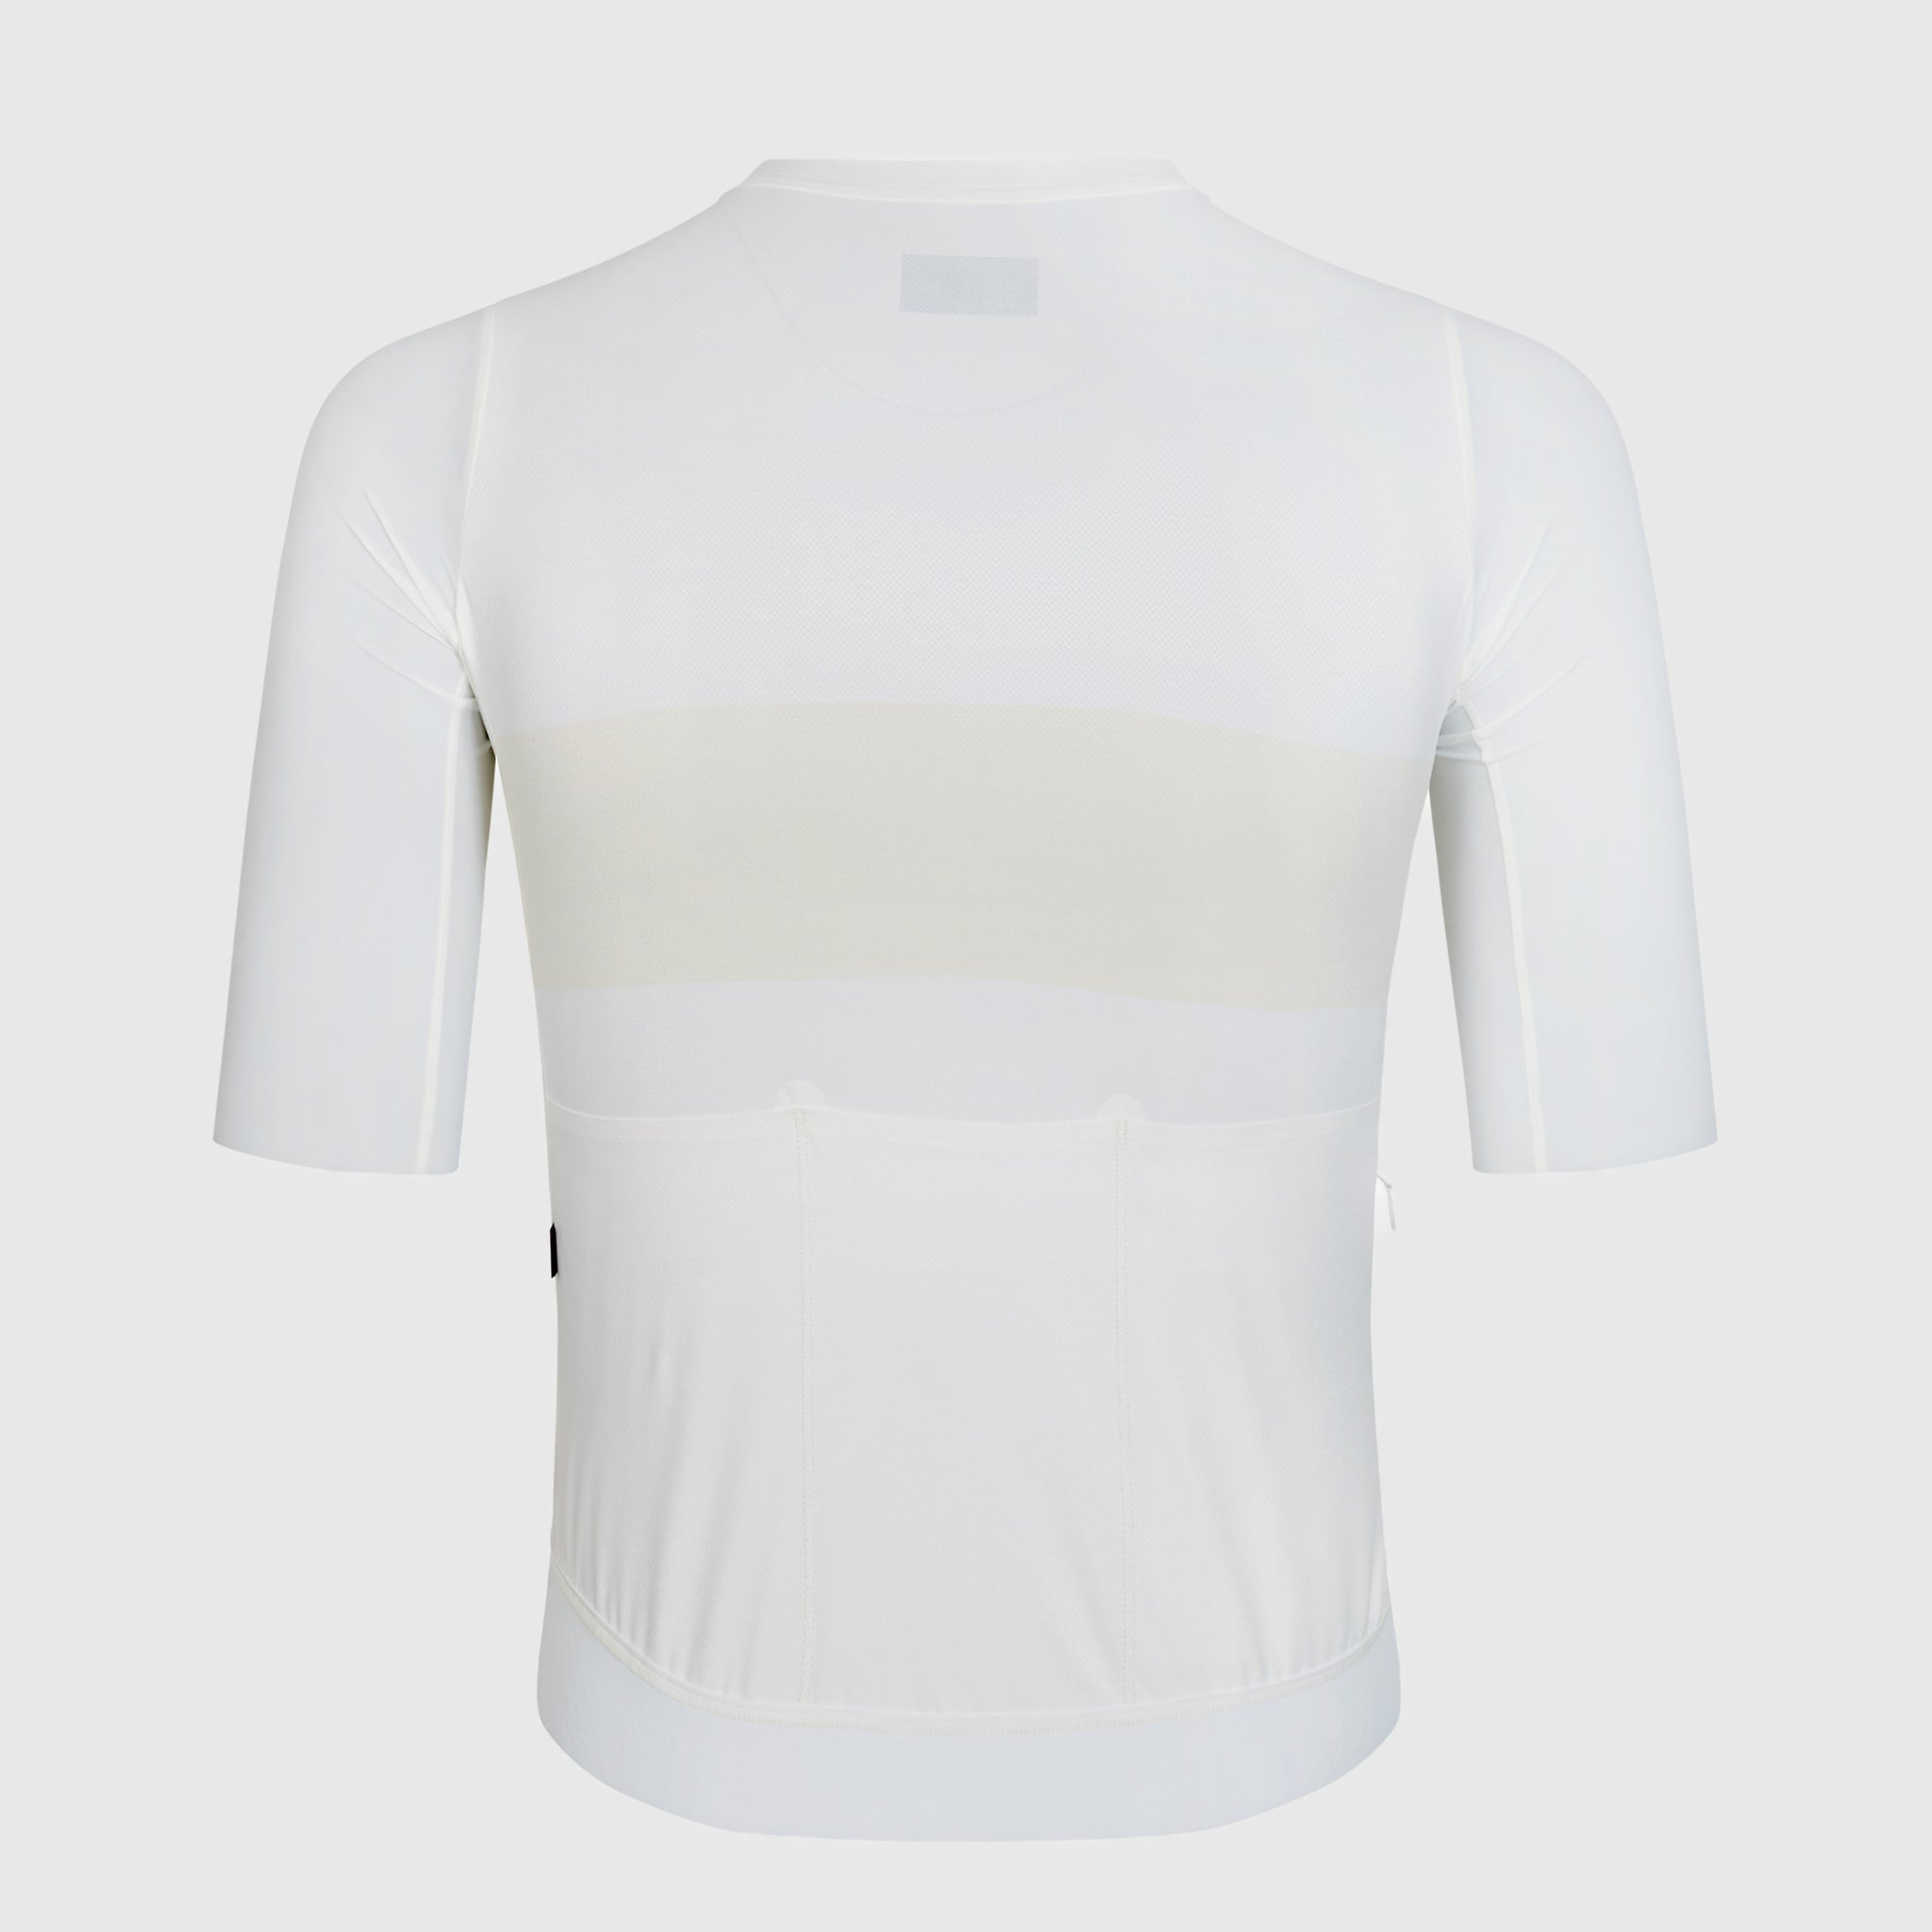 Solitude jersey - Off White Stripe